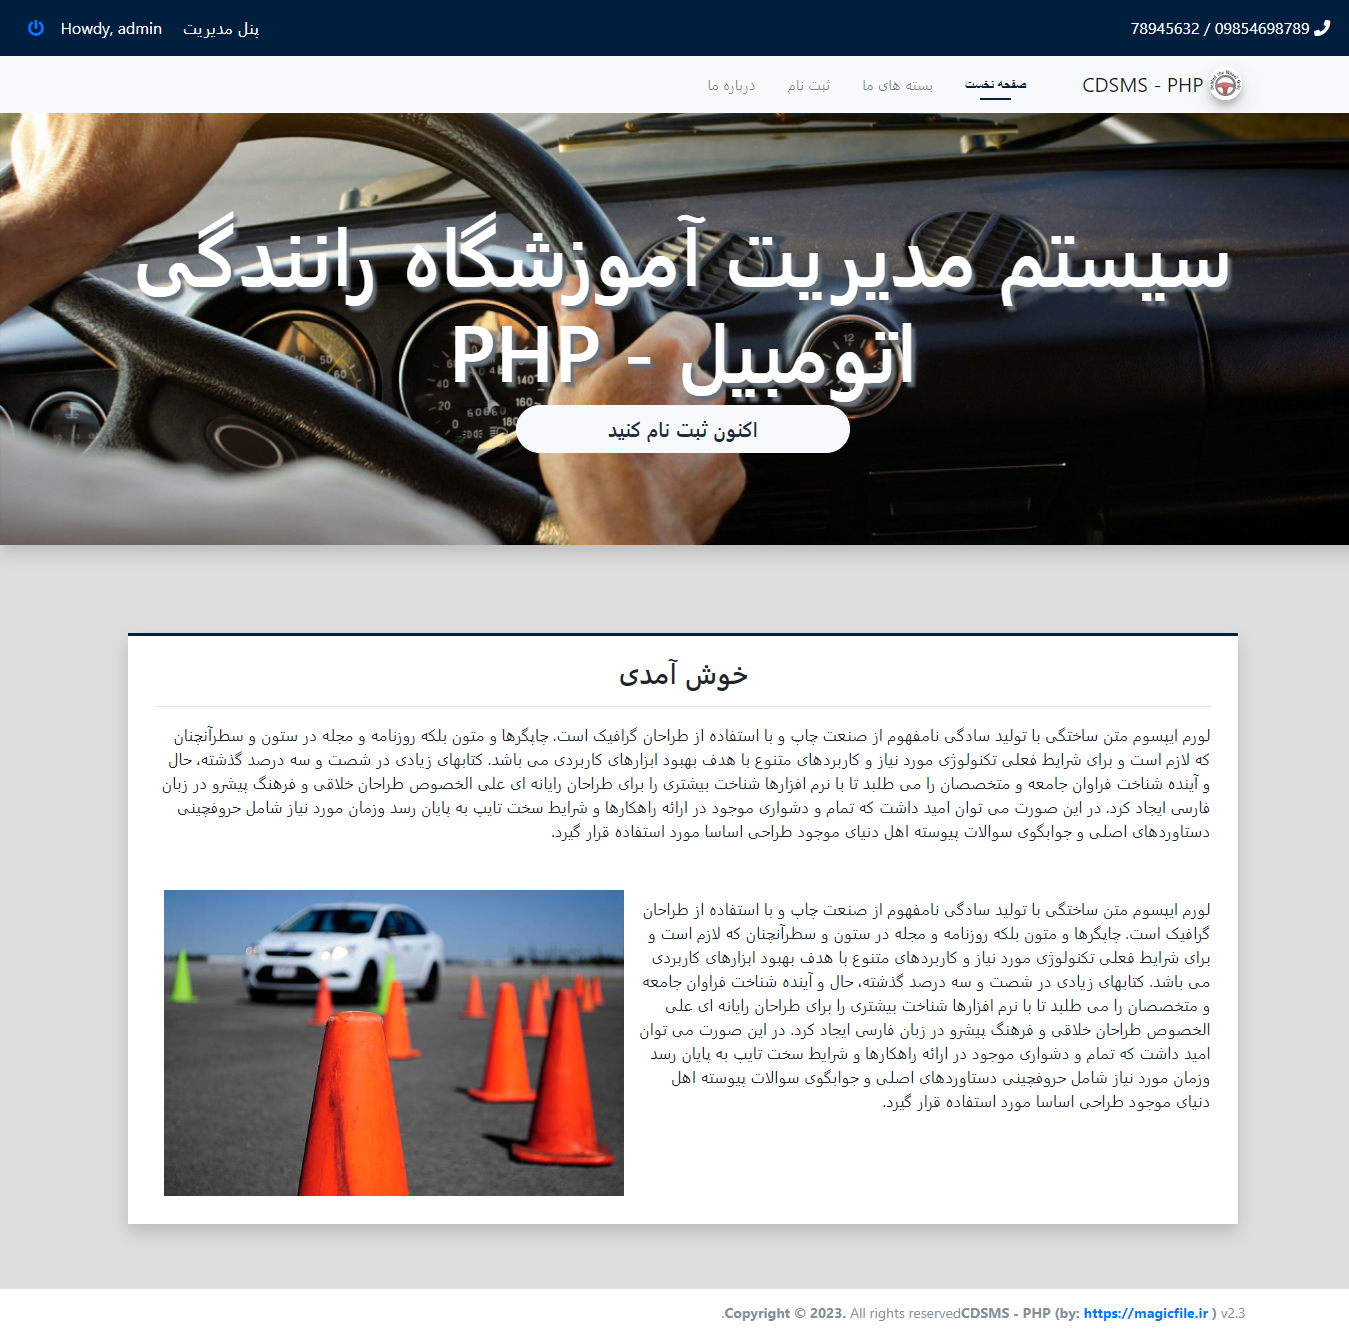 دانلود اسکریپت سیستم مدیریت آموزشگاه رانندگی اتومبیل در کد منبع PHP-OOP 111